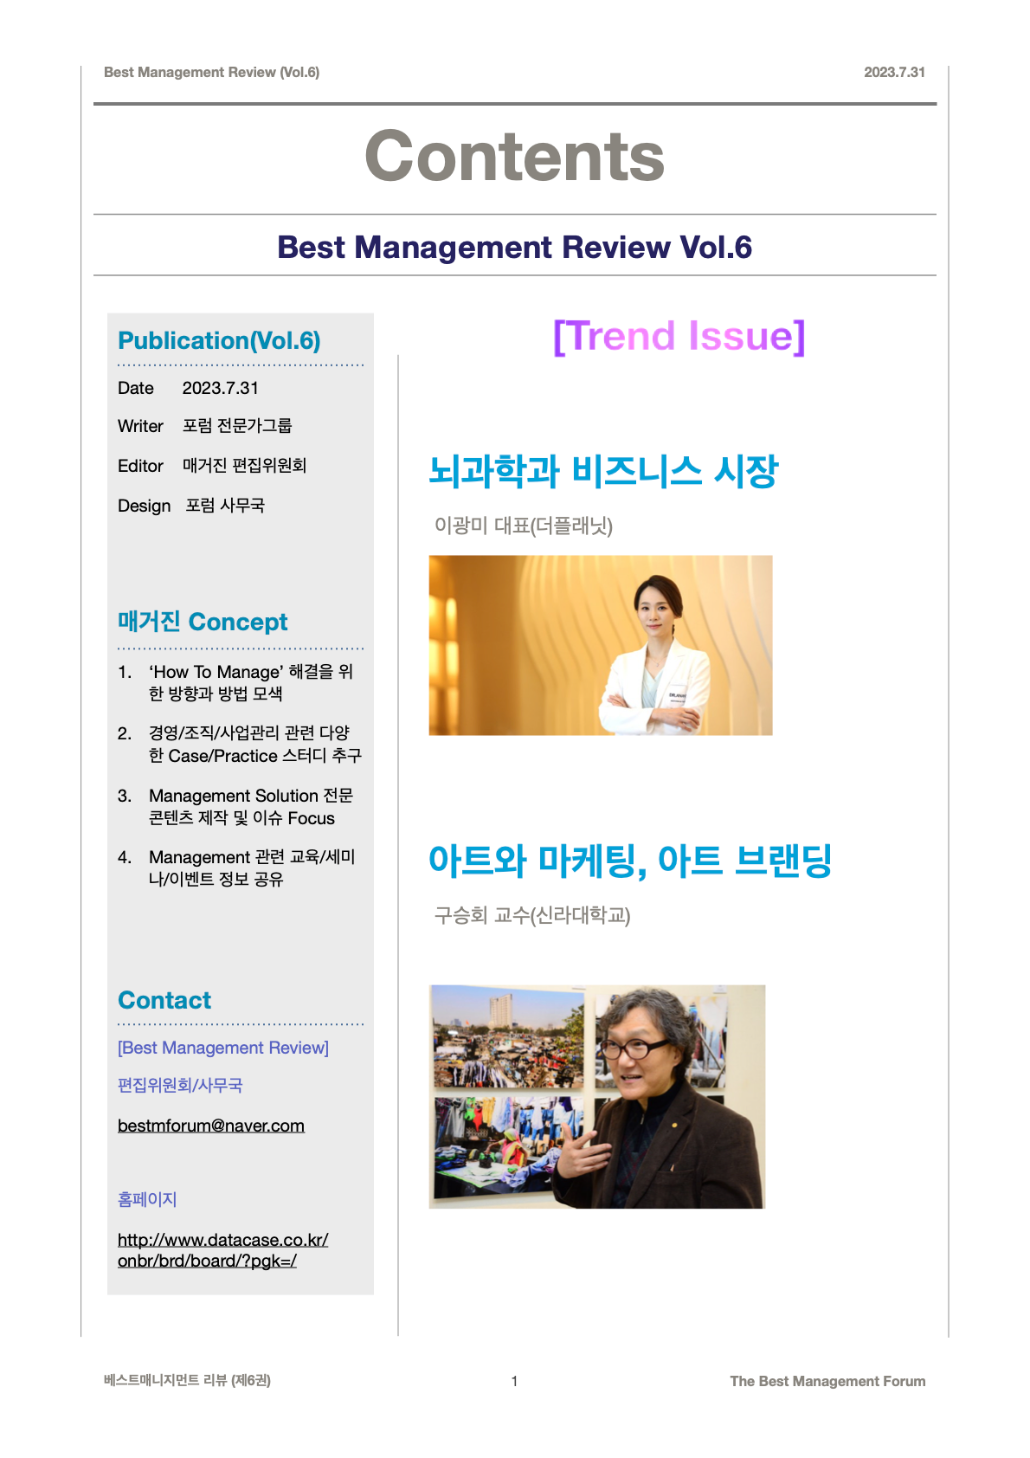 Best Management Review Vol.6 Contents(2023.7.31)